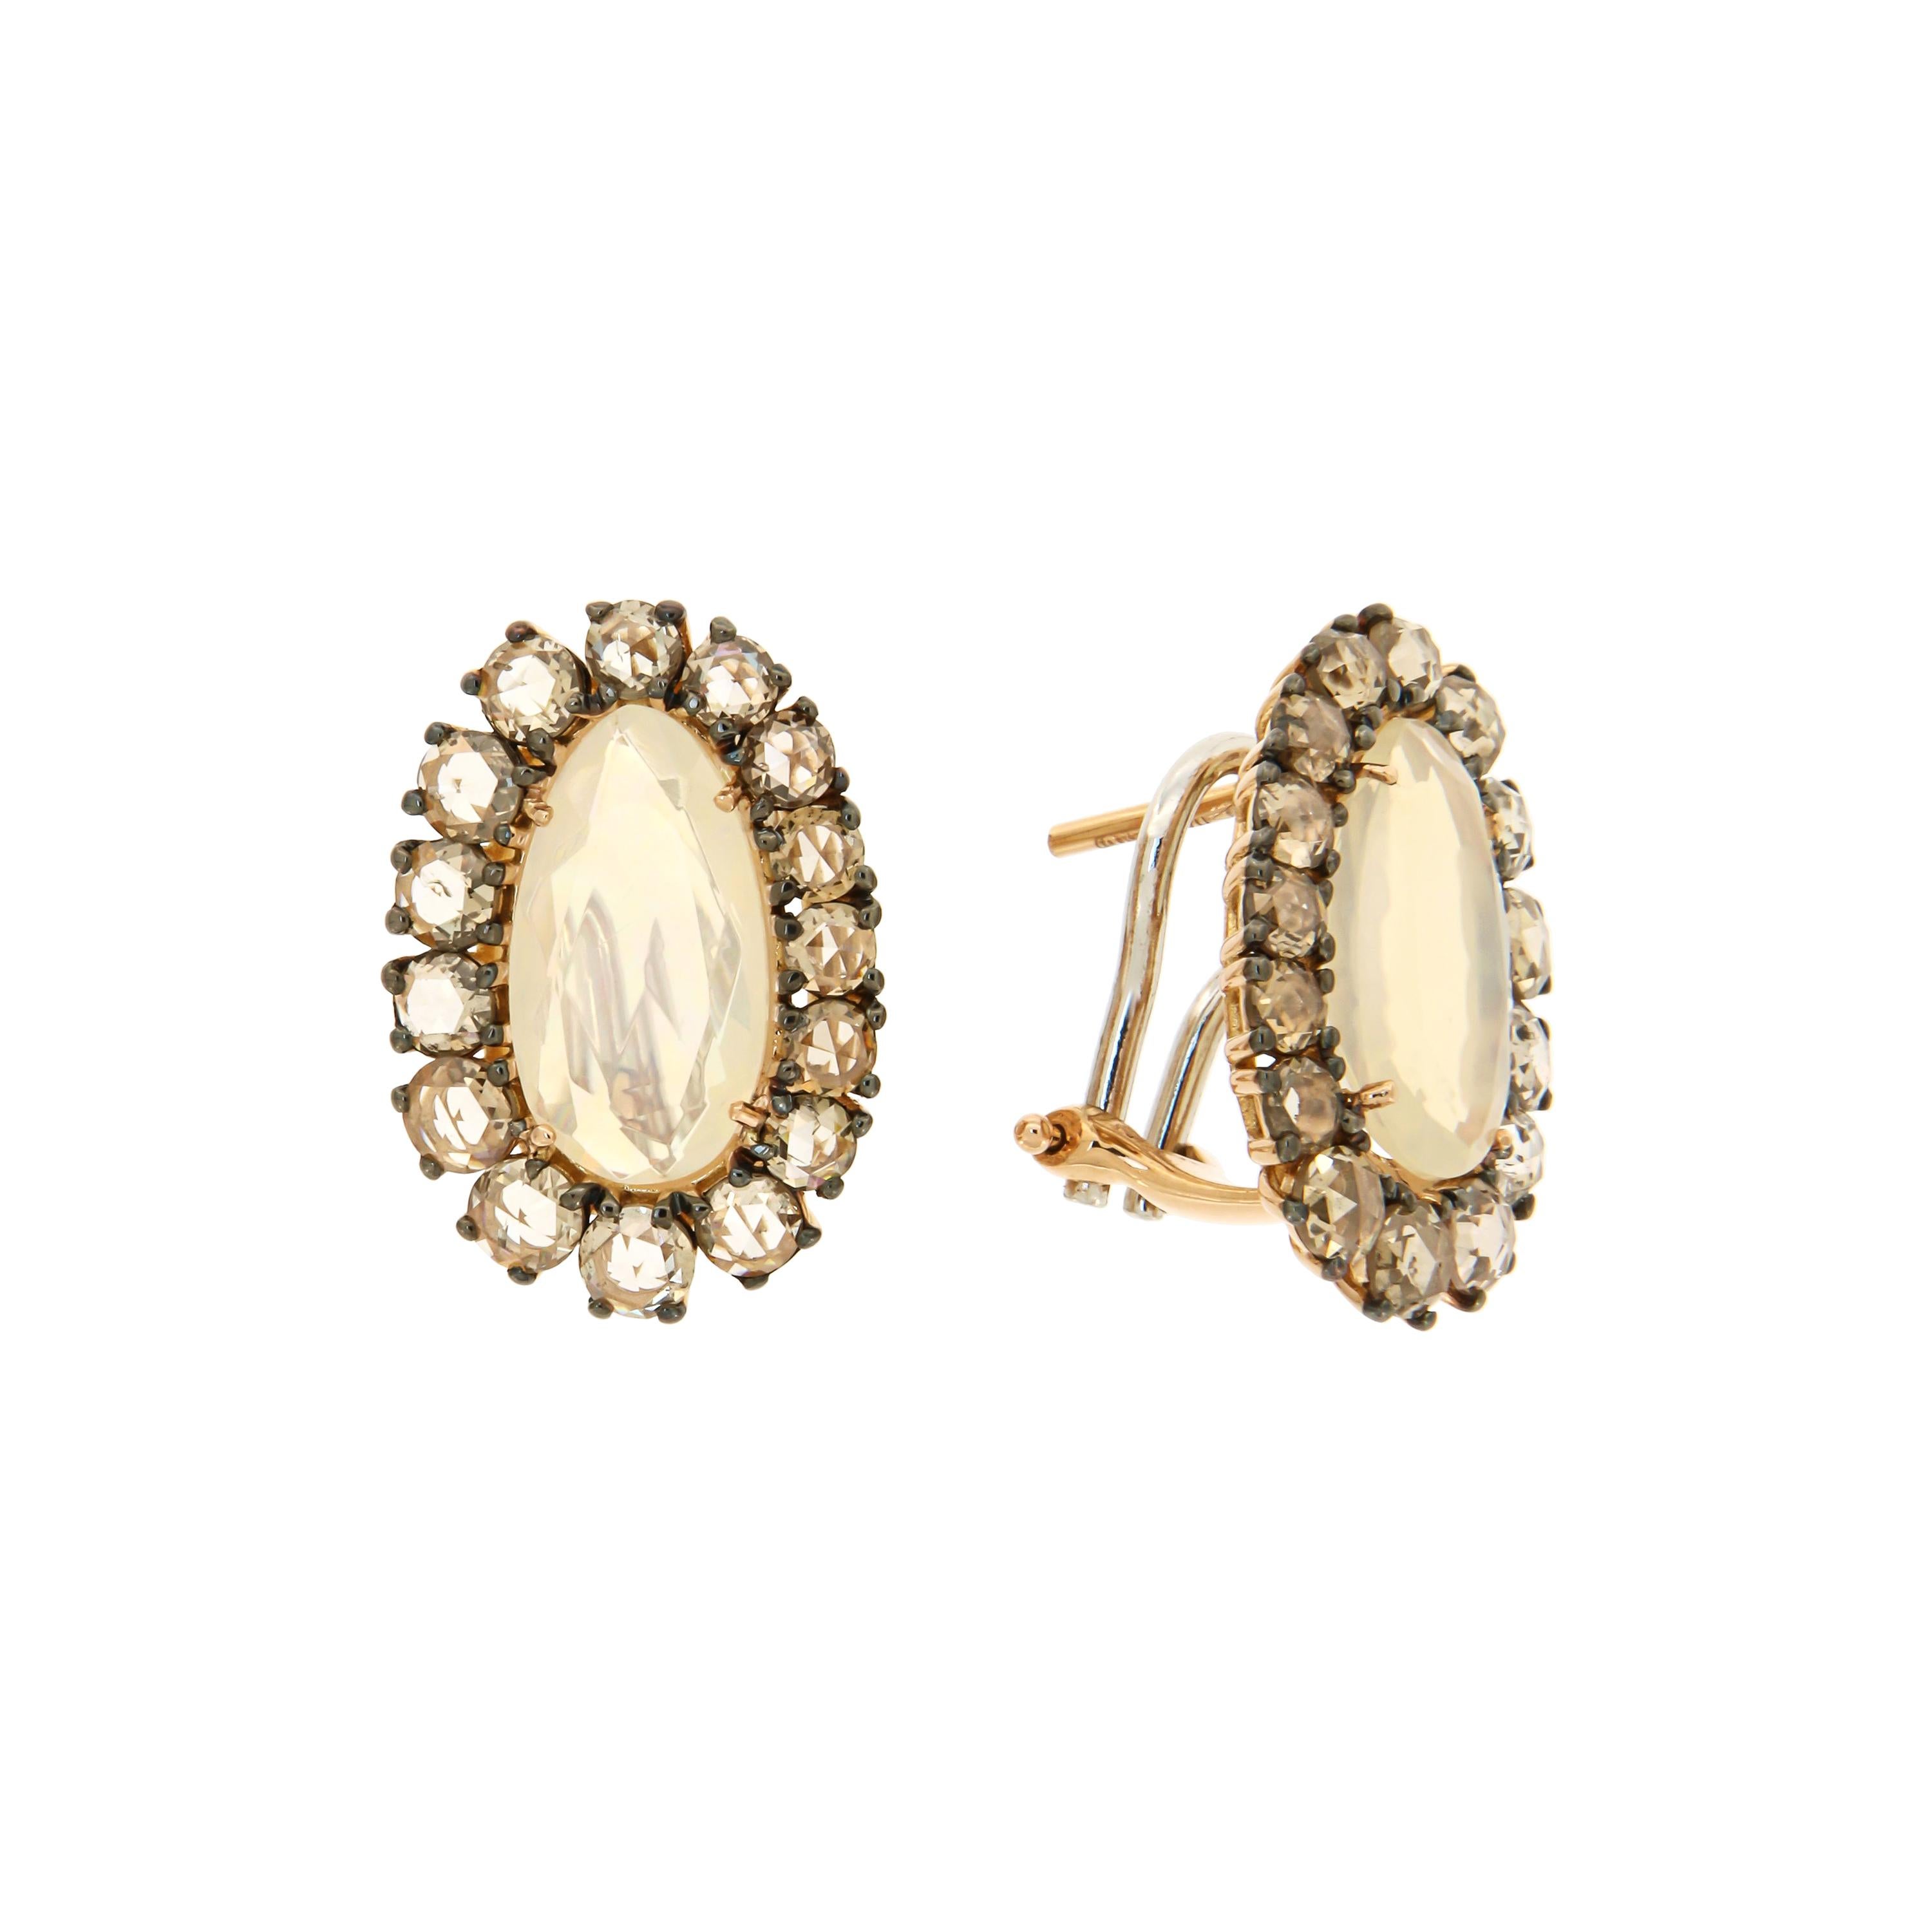 Italian Lever-Back 18k Opal Diamonds Brown Rose Gold Earrings for Her